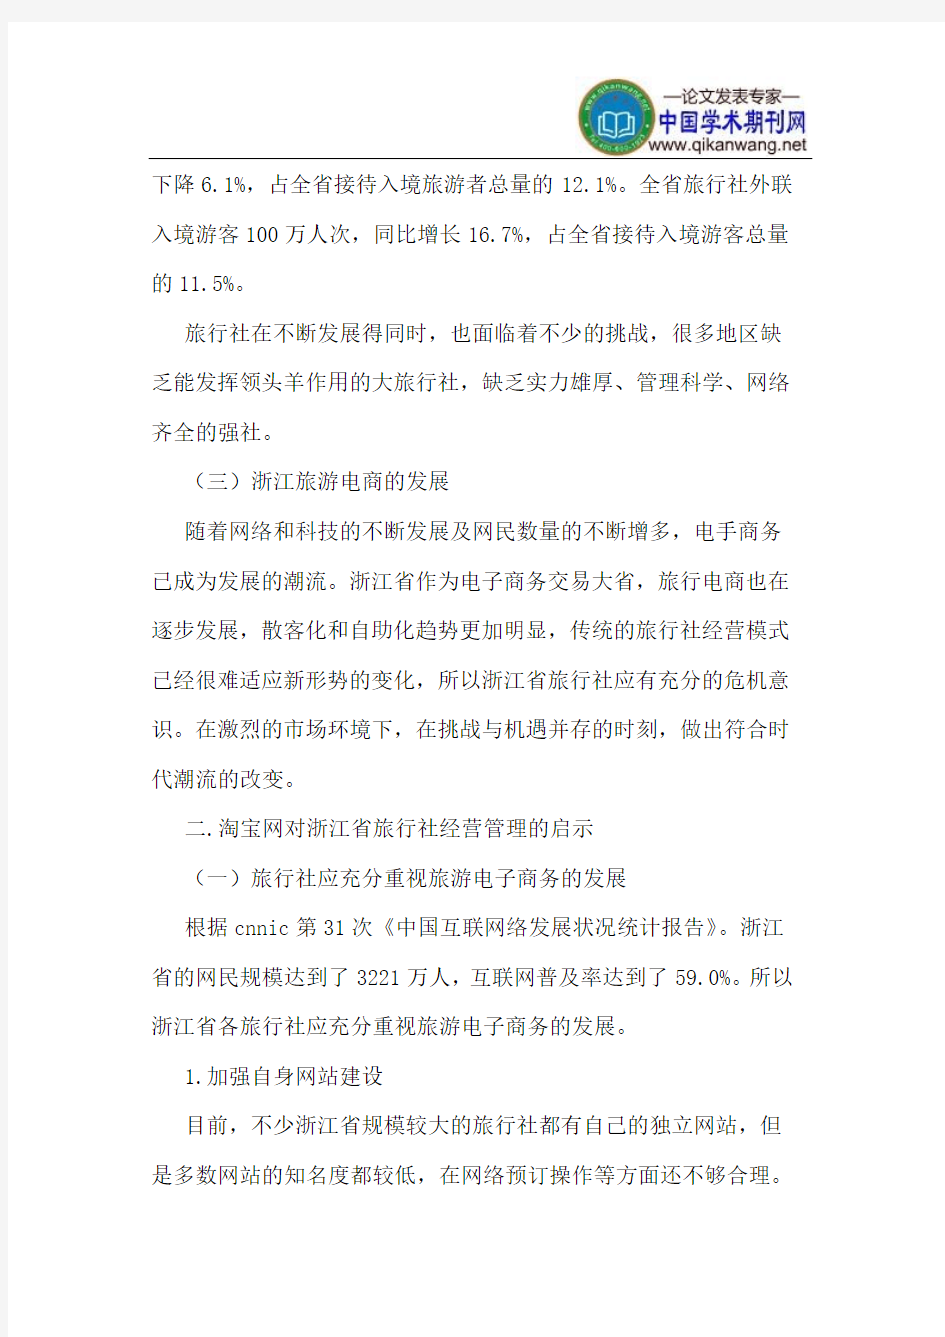 淘宝网对浙江省旅行社经营管理的启示